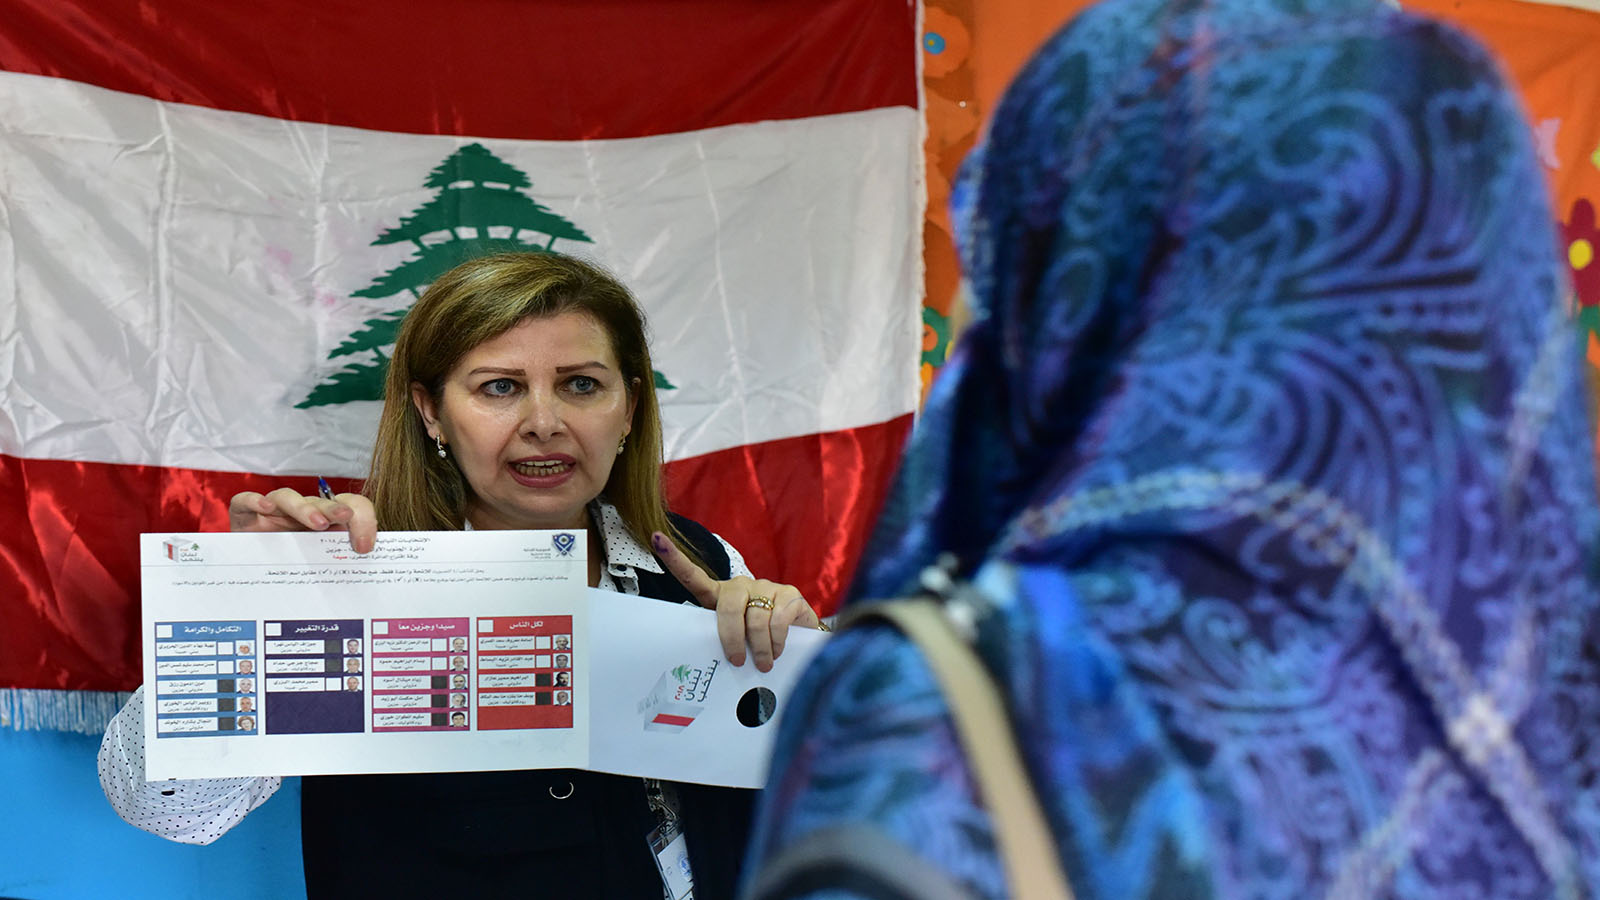 إنفوغراف: المرأة في لبنان.. إلى الخلف در